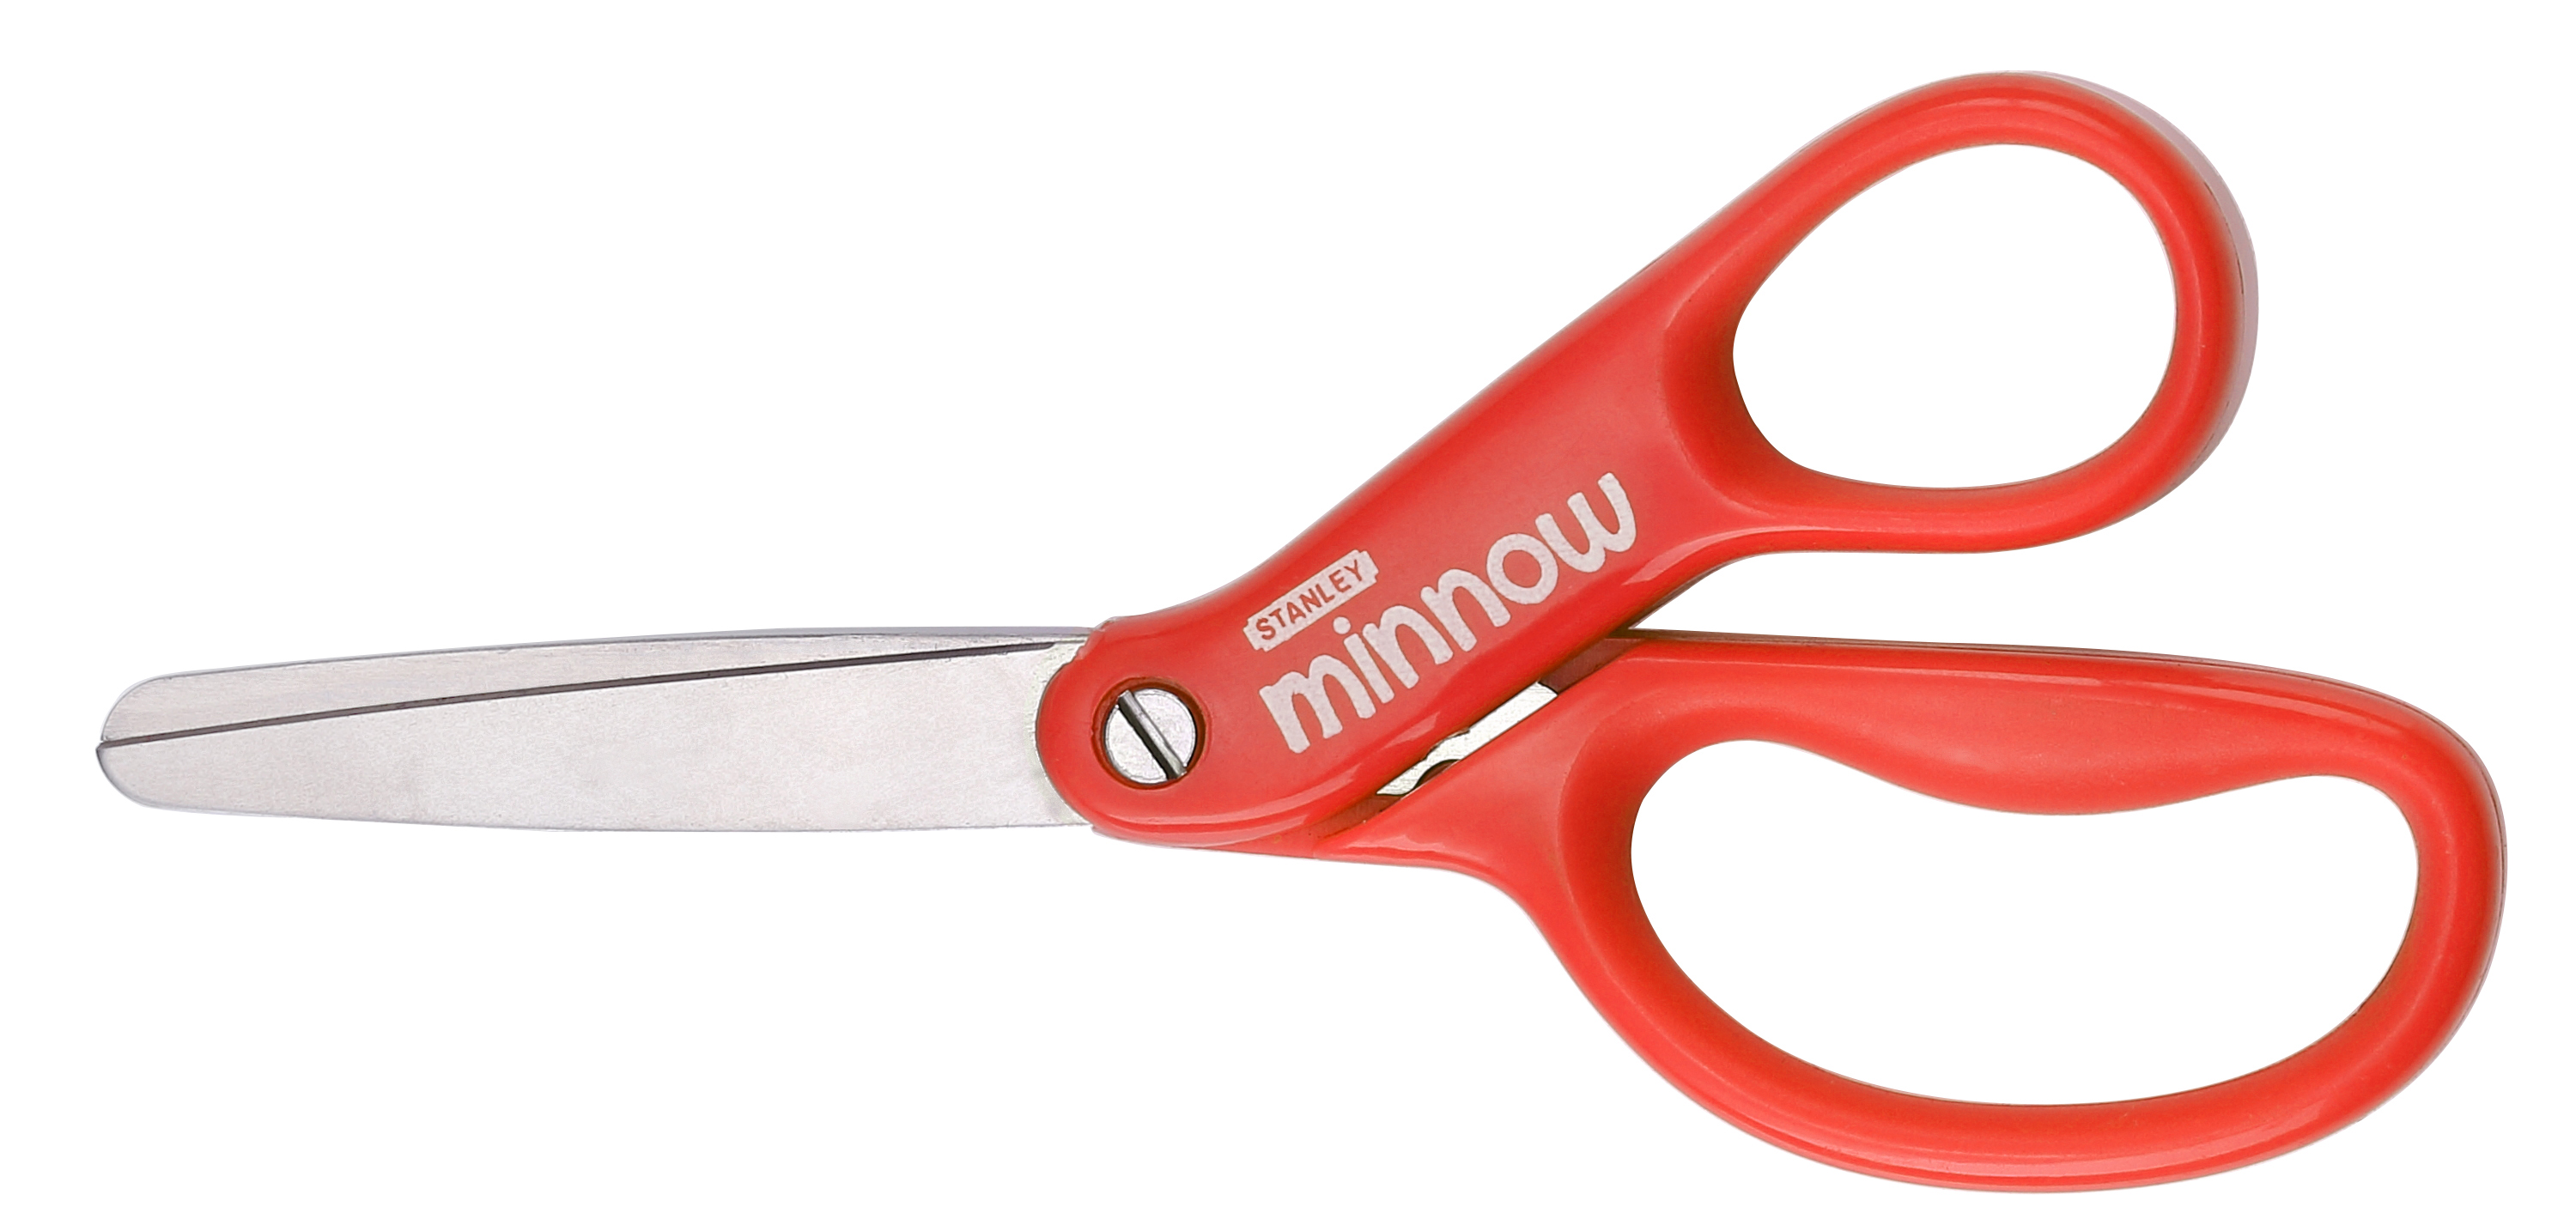 Stanley Minnow 5-inch Pointed Tip Kids Classroom Scissors, Orange